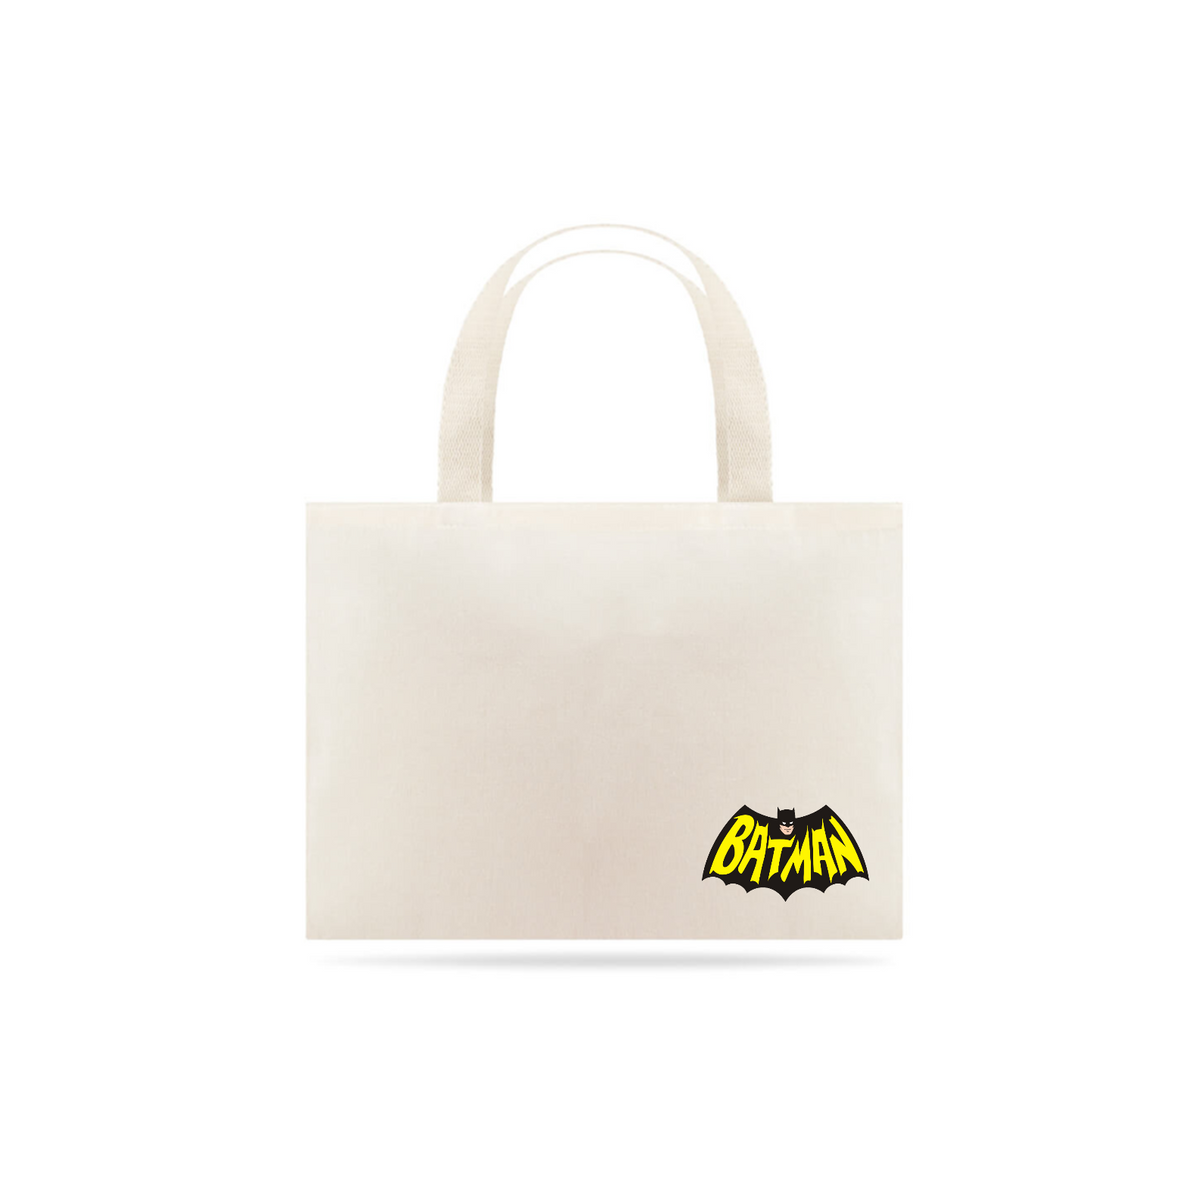 Nome do produto: Eco Bag 006 - Batman